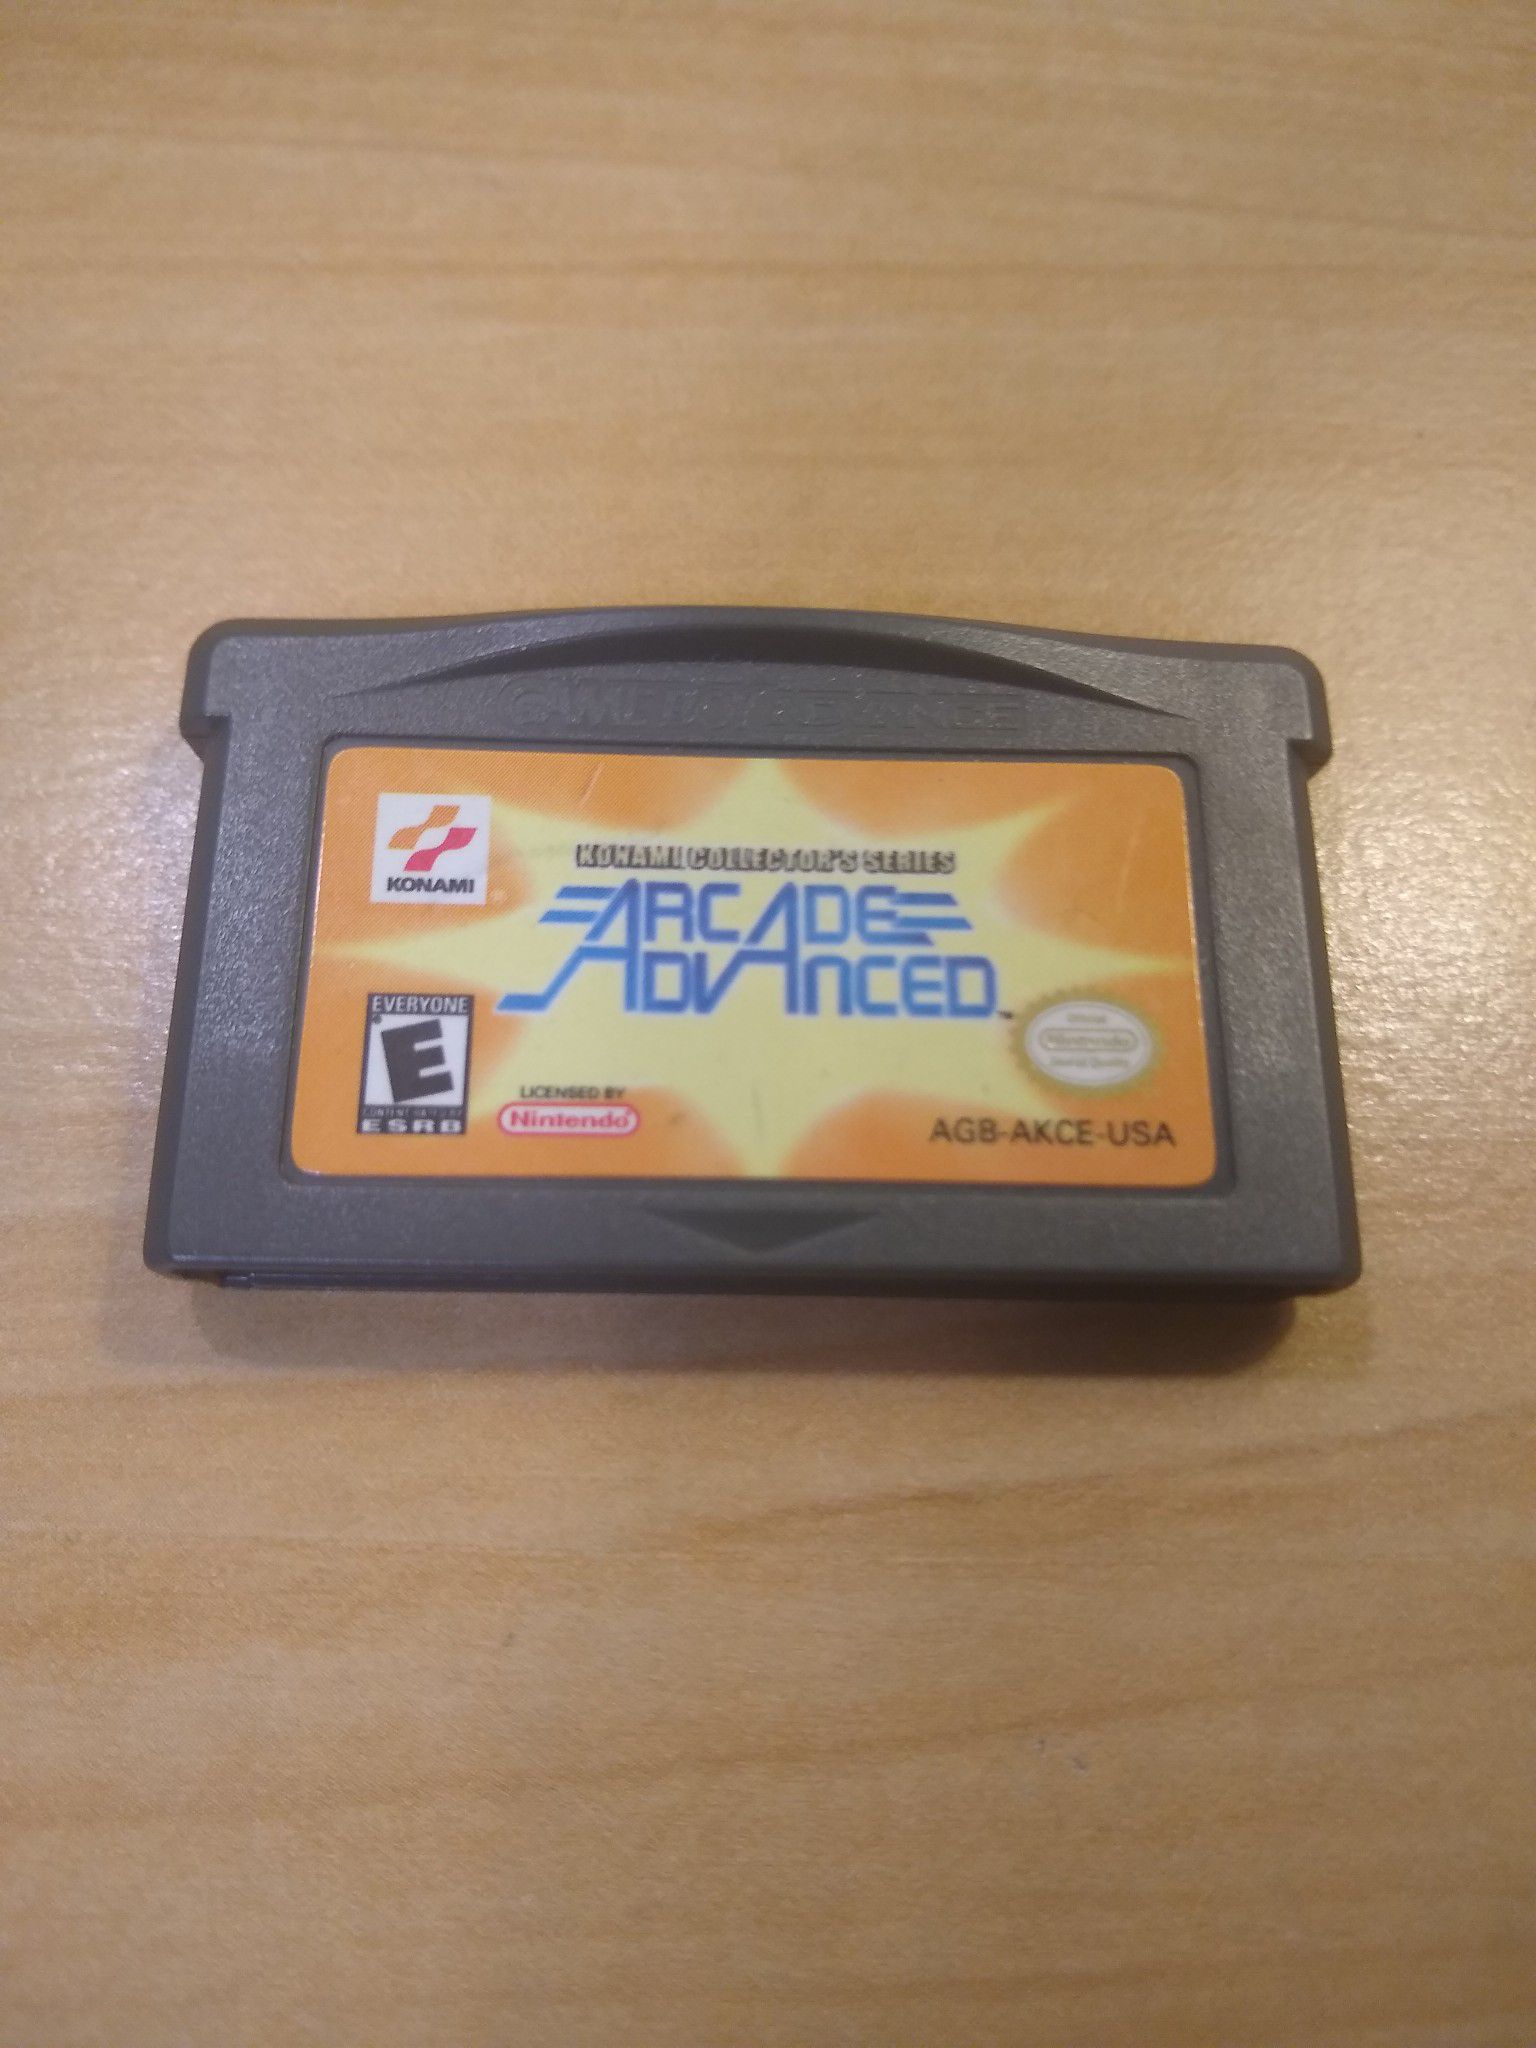 Konami collector's series Arcade advanced Nintendo Game Boy